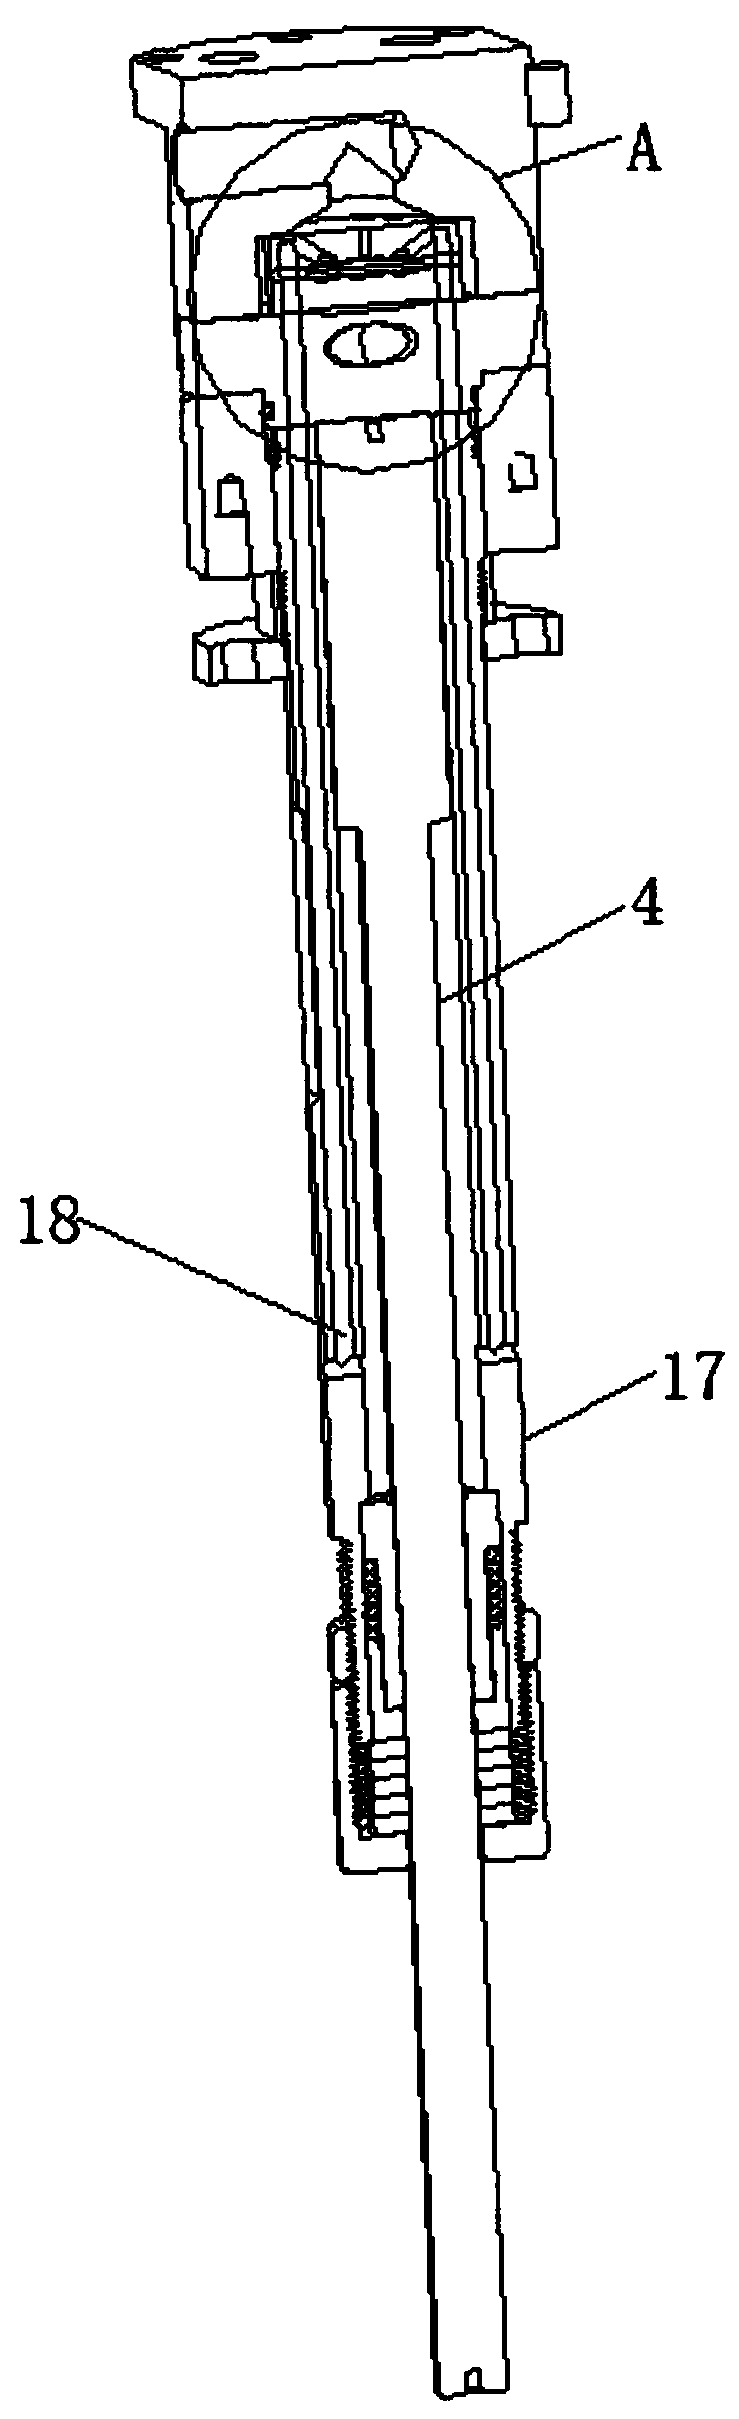 Pneumatic hammer for removing cinder ladle